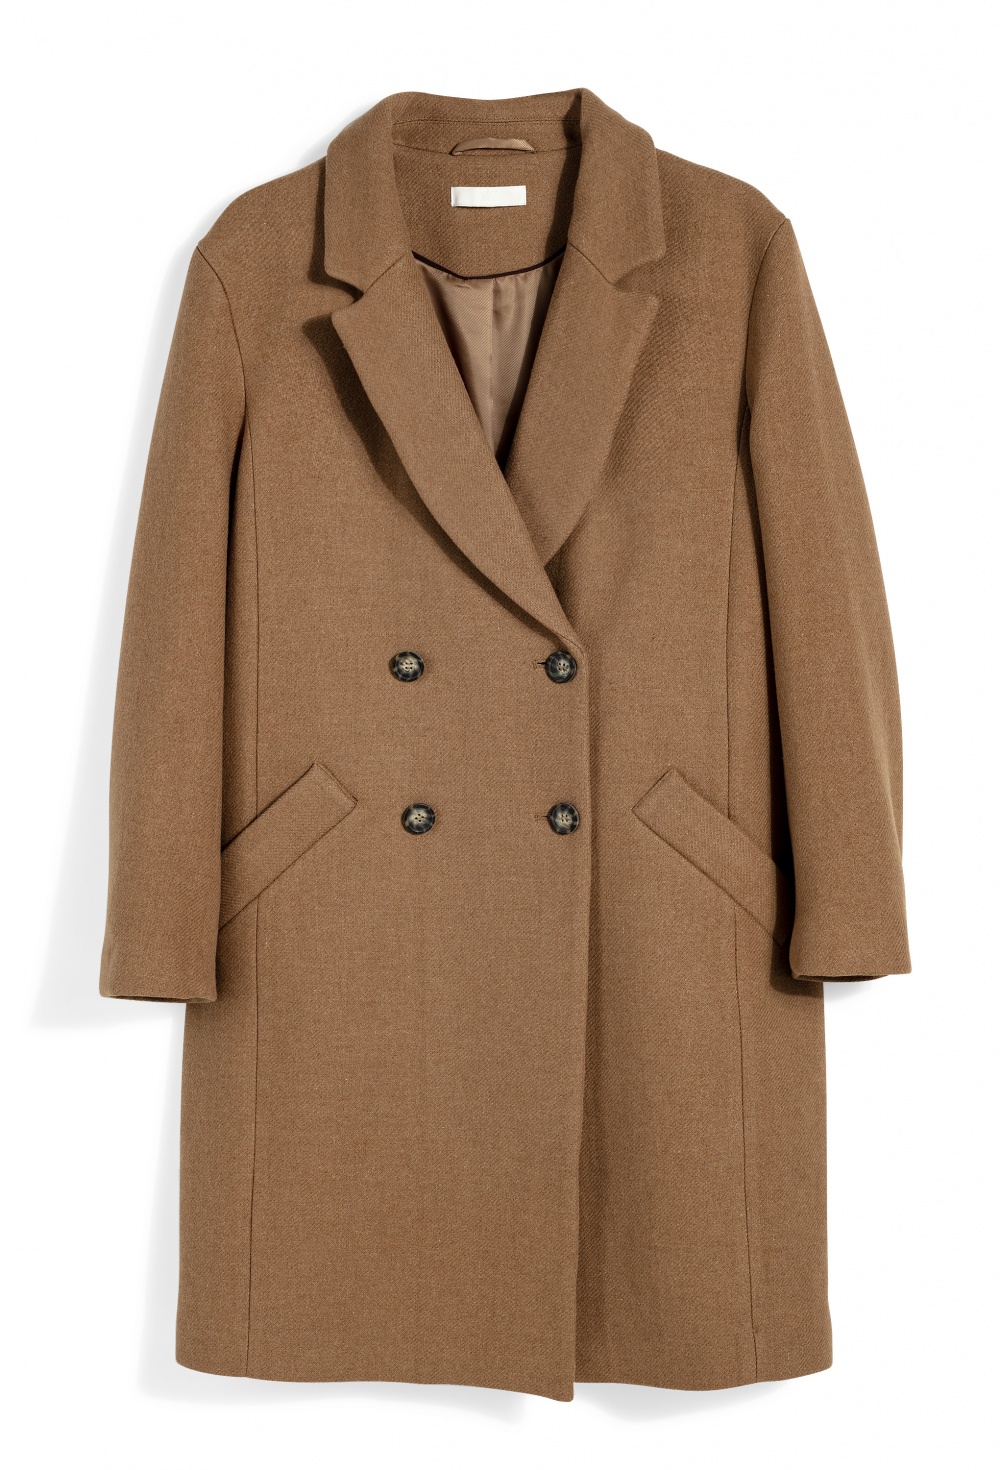 Шерстяное пальто wool blend for H&m 46-48 размера